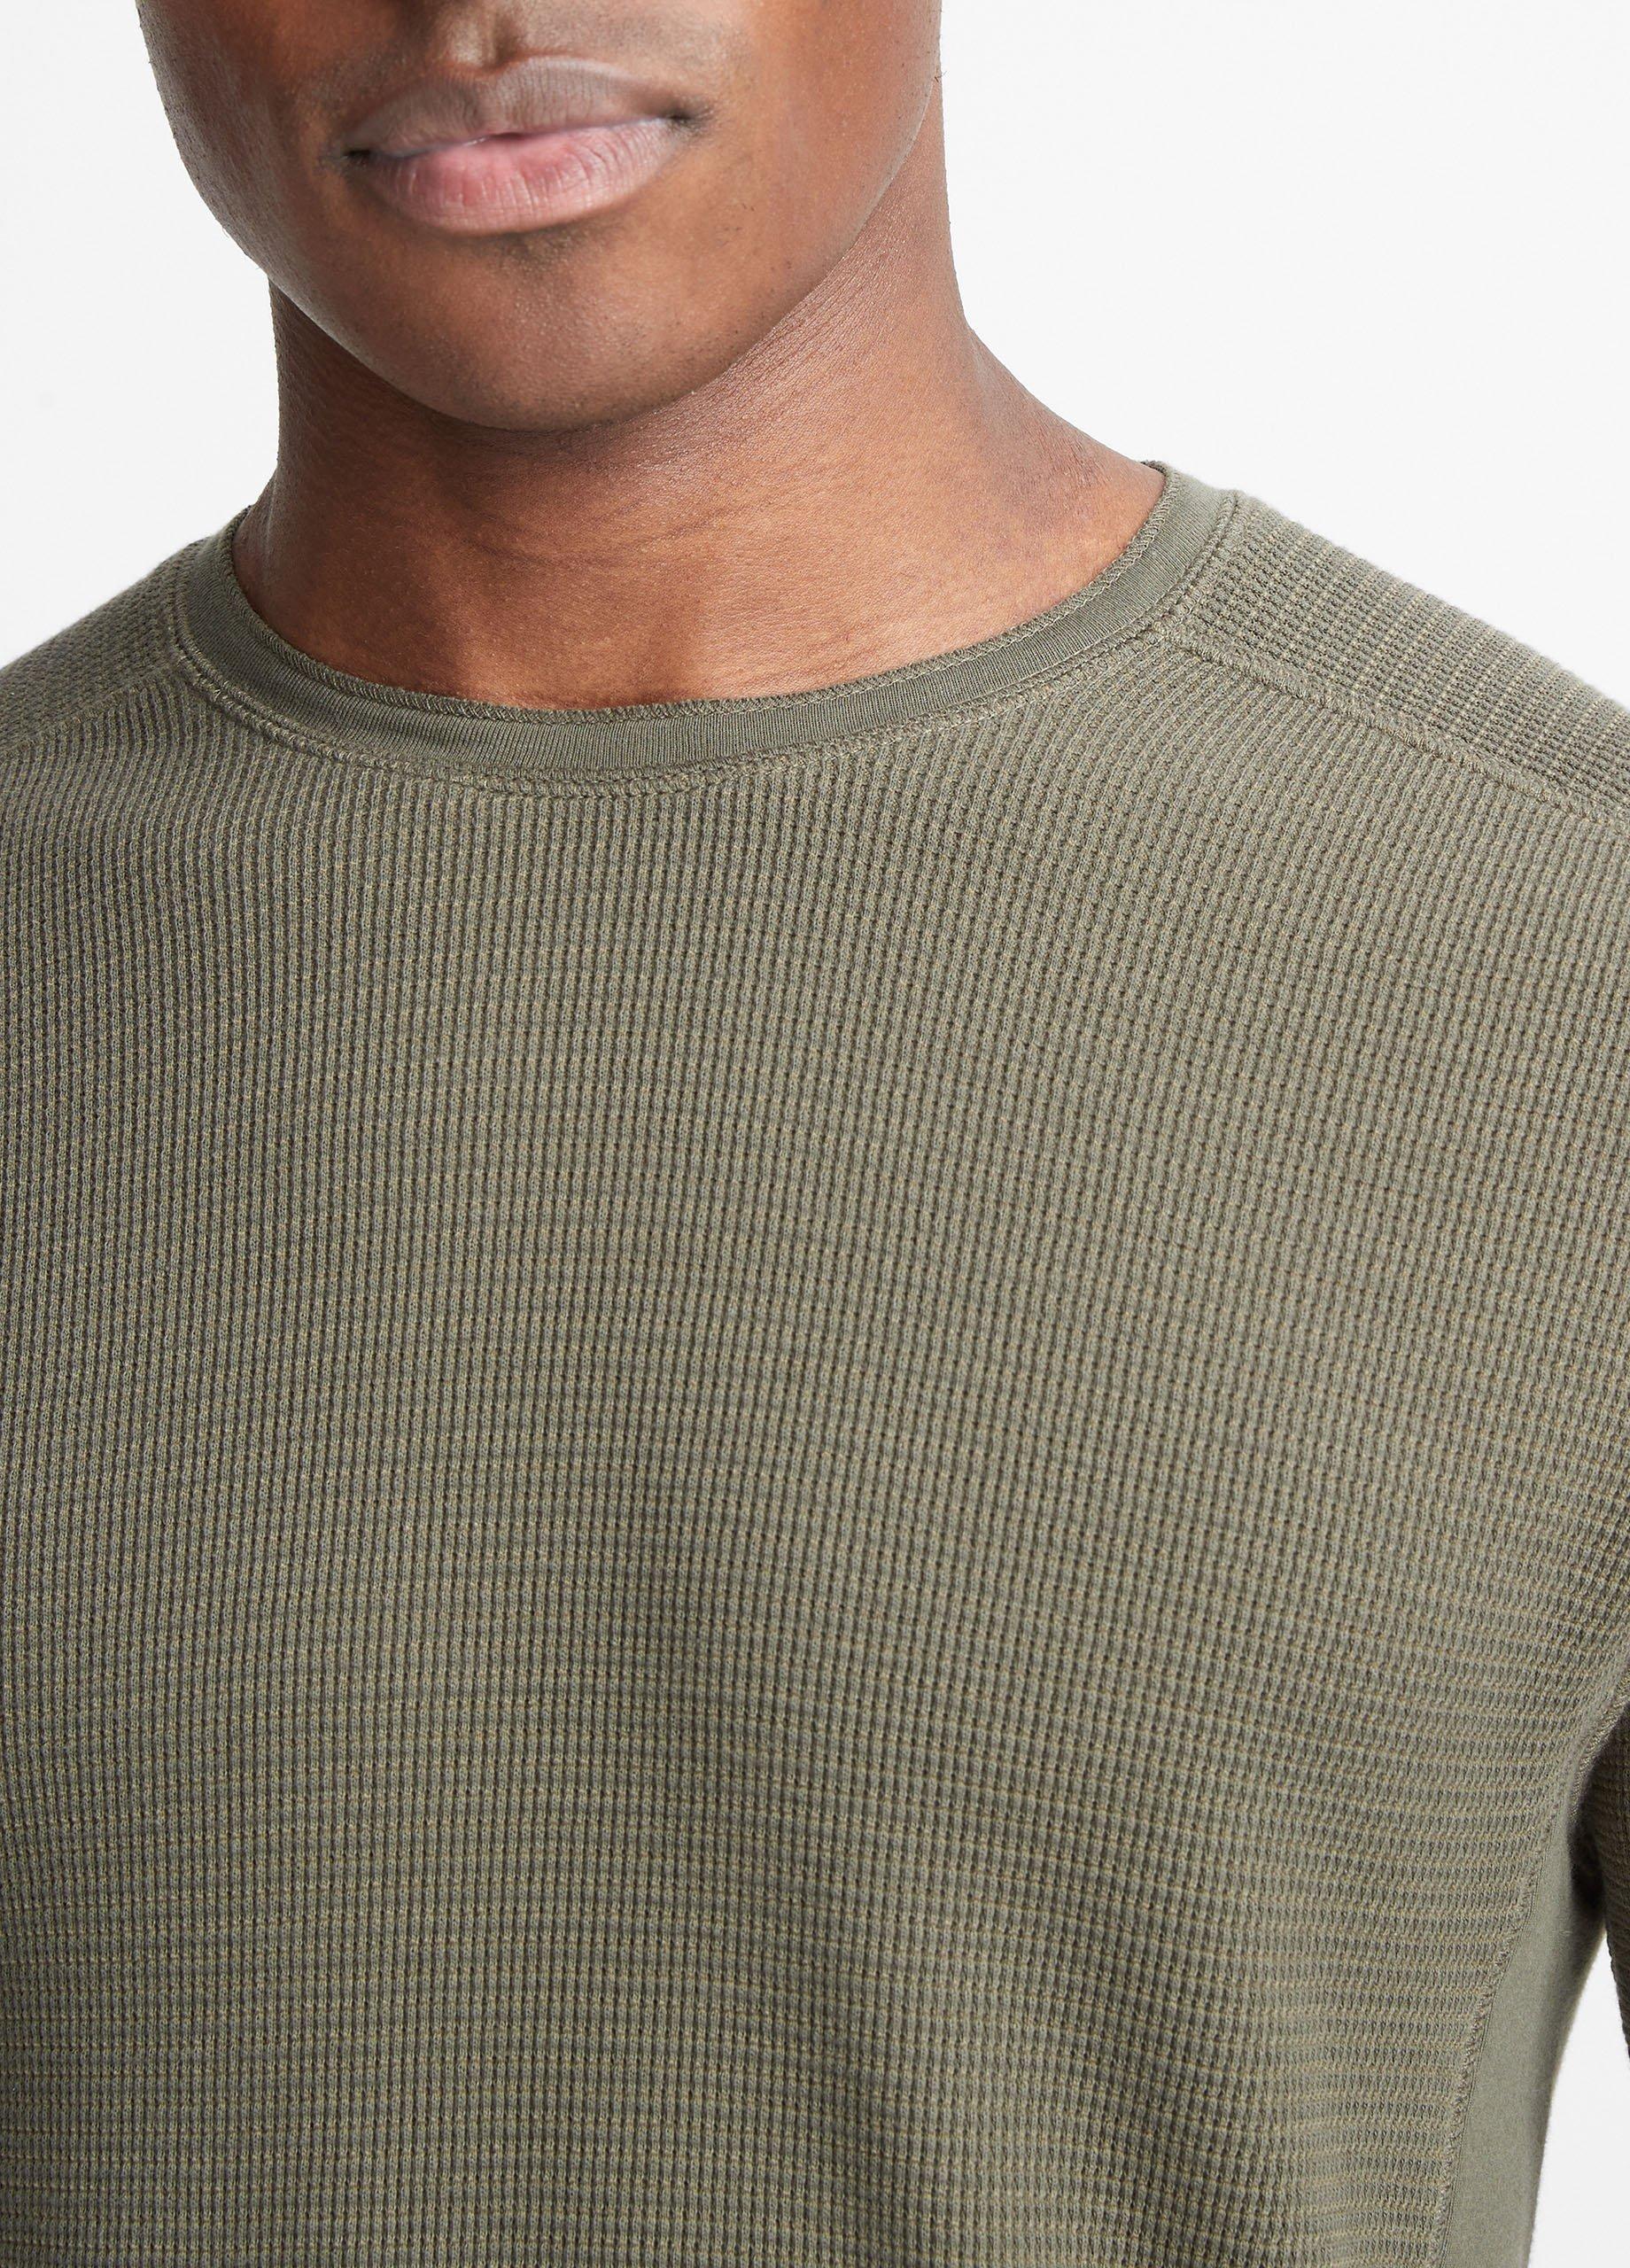 Thermal Long-Sleeve Crew Neck T-Shirt in Tees & Hoodies